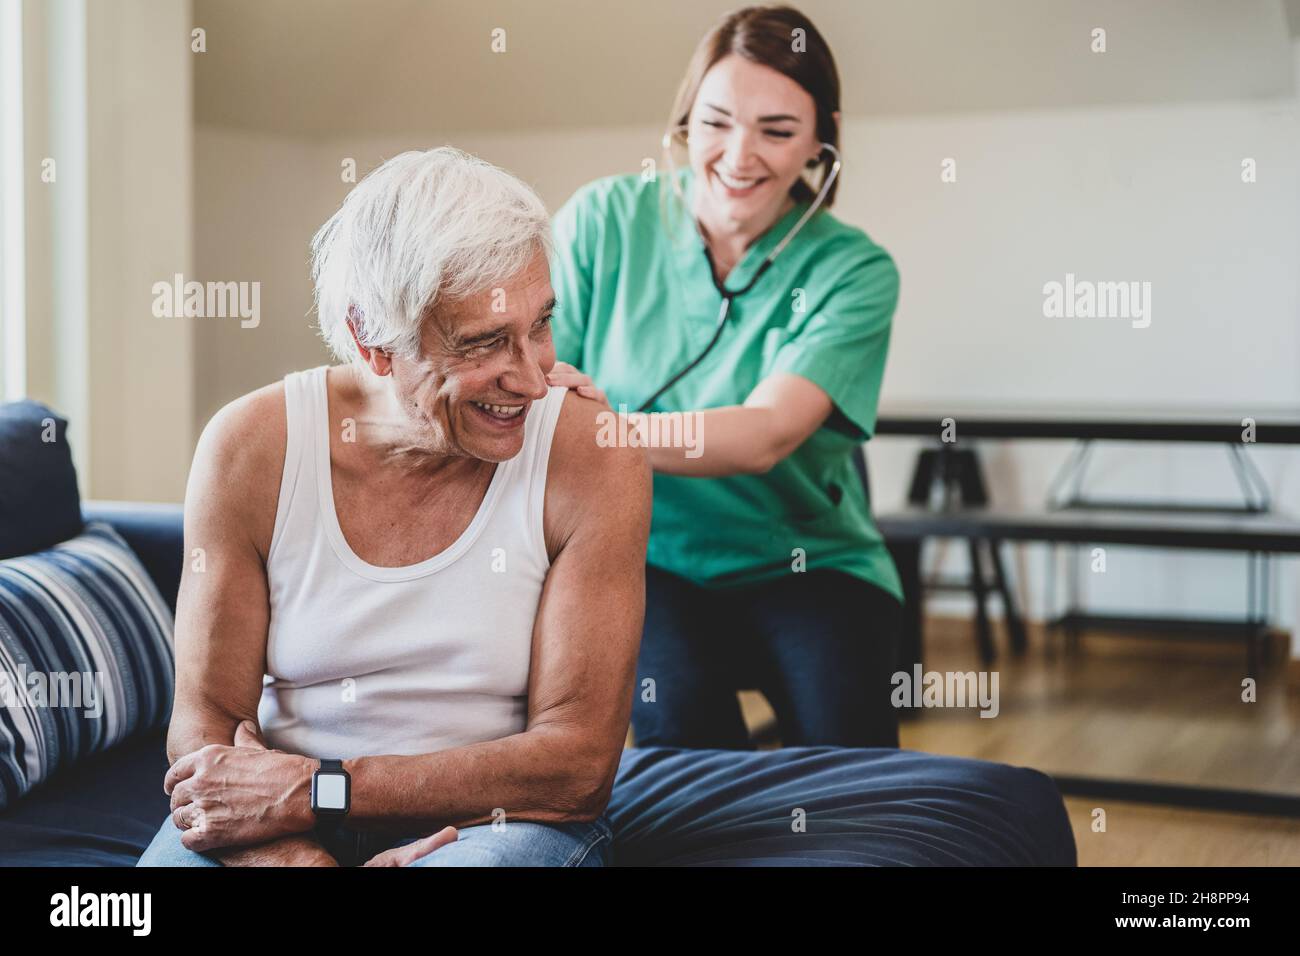 Glückliche Krankenschwester mit einem Stethoskop, das einen älteren Mann besucht, häusliche medizinische Assistentin Konzept, lächelnder Gesundheitsgast und ein älterer männlicher Patient, c Stockfoto